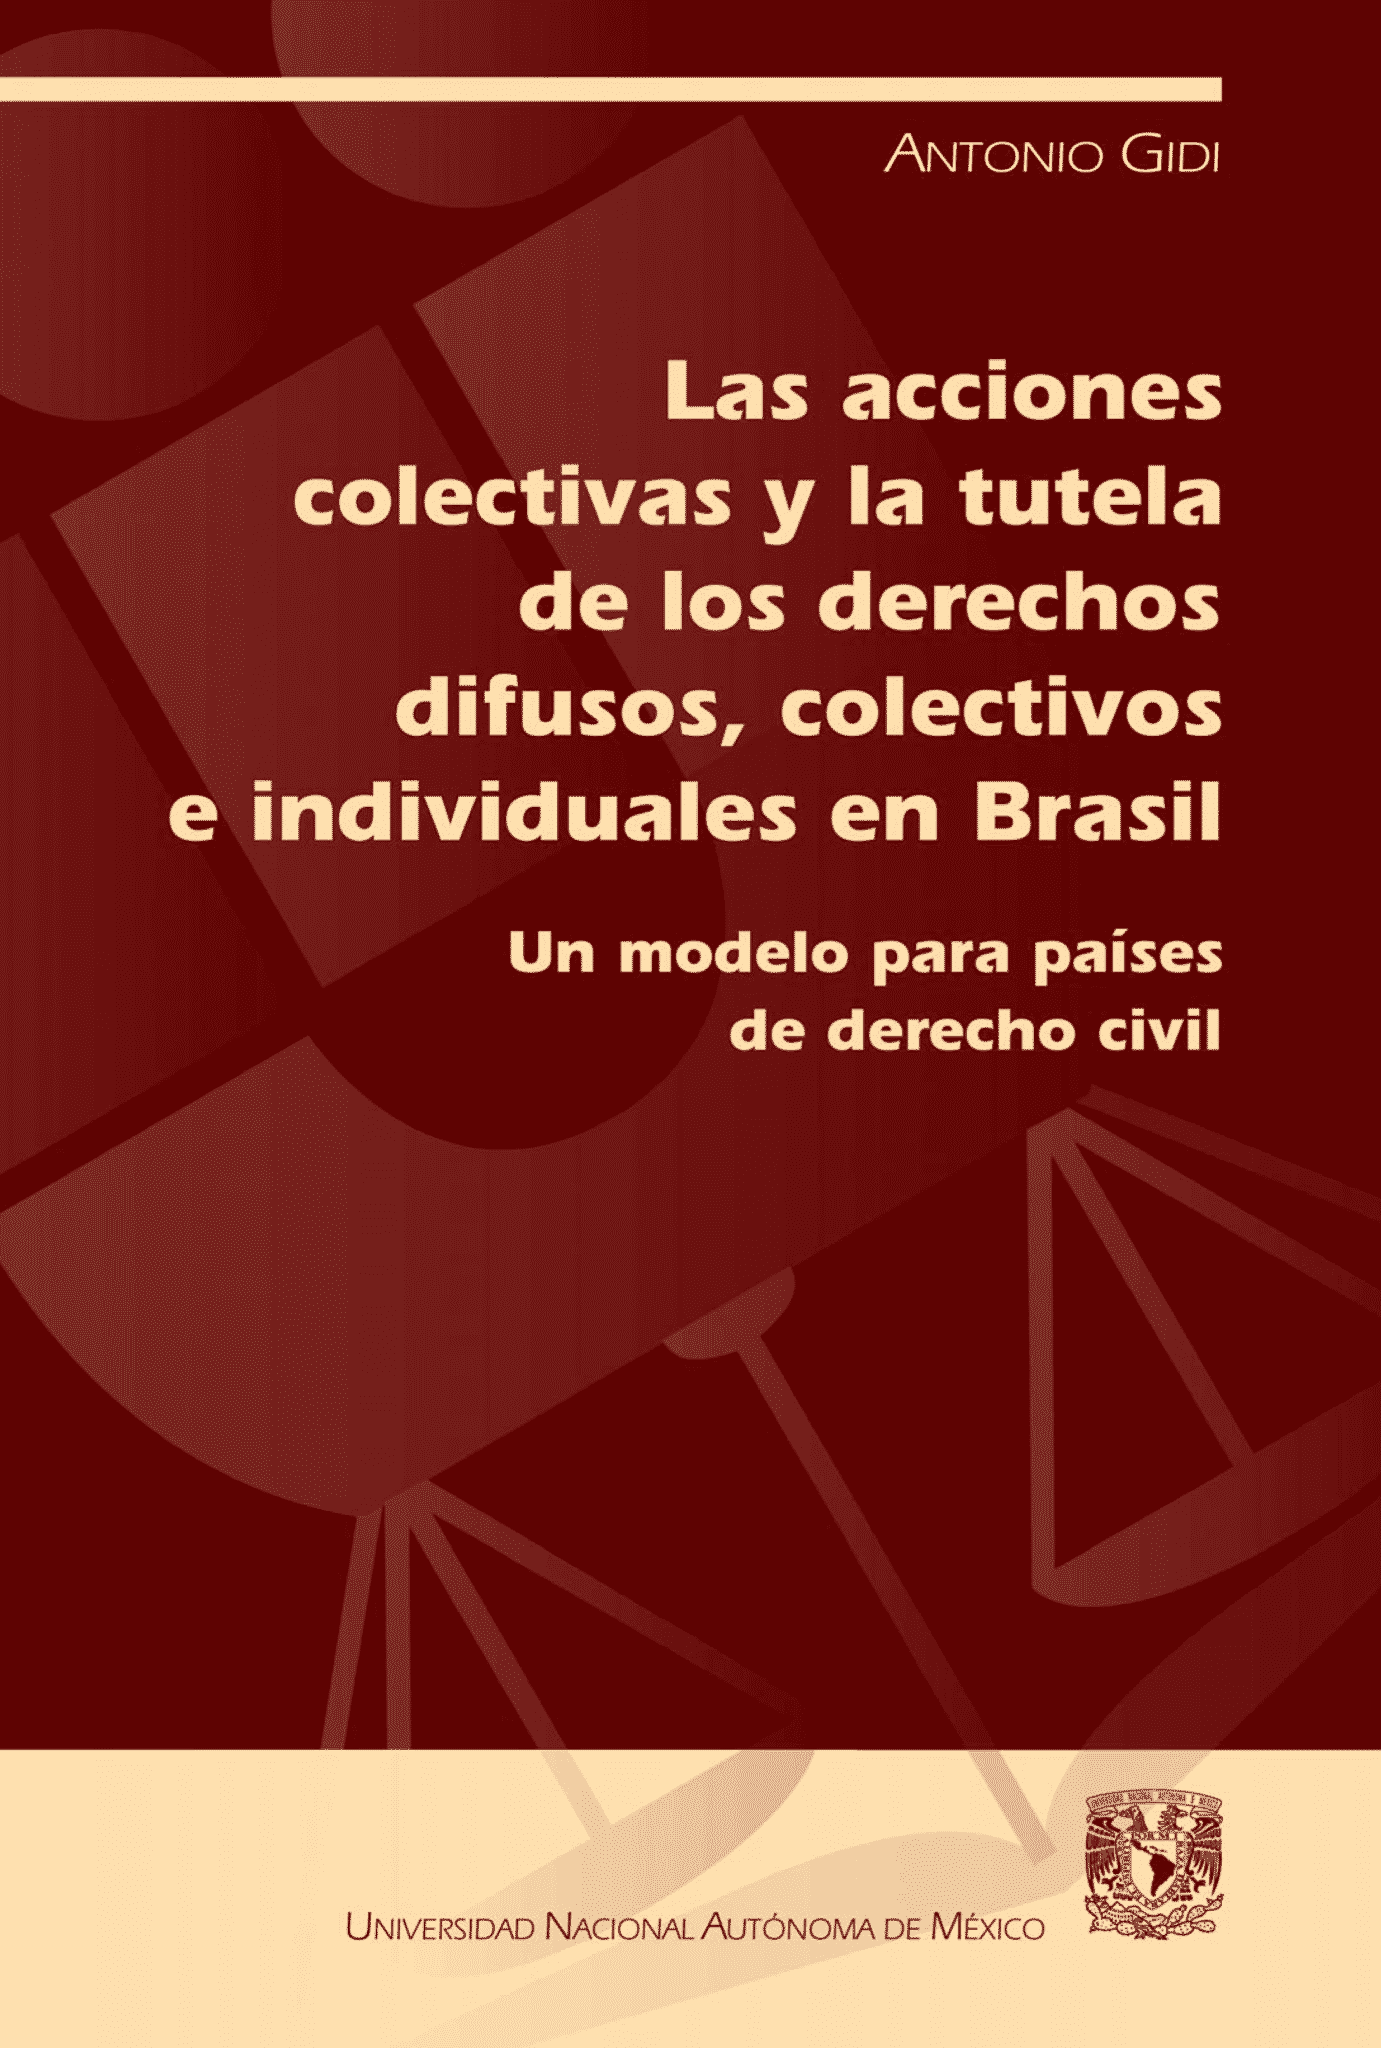 Las Acciones Colectivas y la Tutela de los Derechos Difusos, Colectivos e Individuales en Brasil.